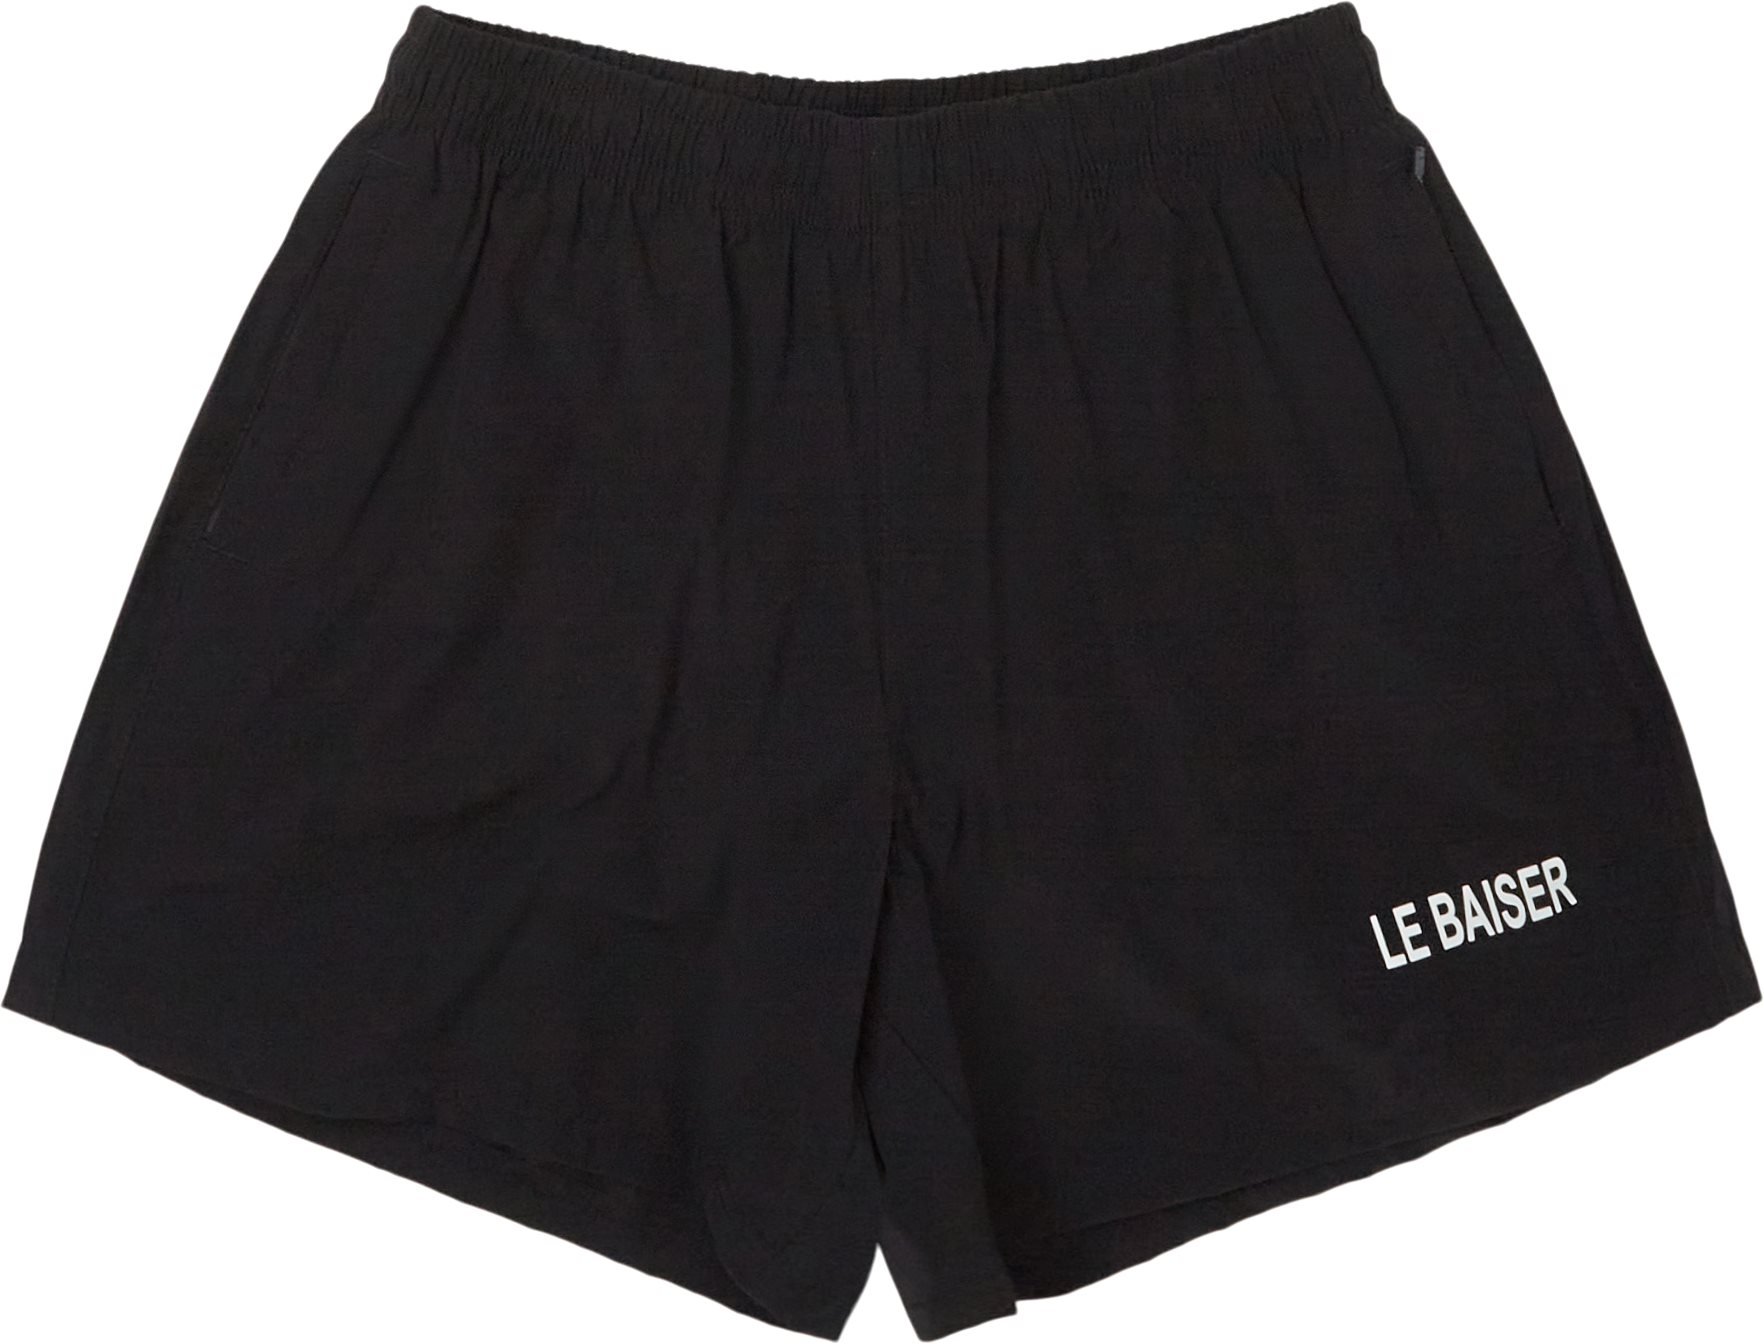 Le Baiser Shorts MARCHE Black